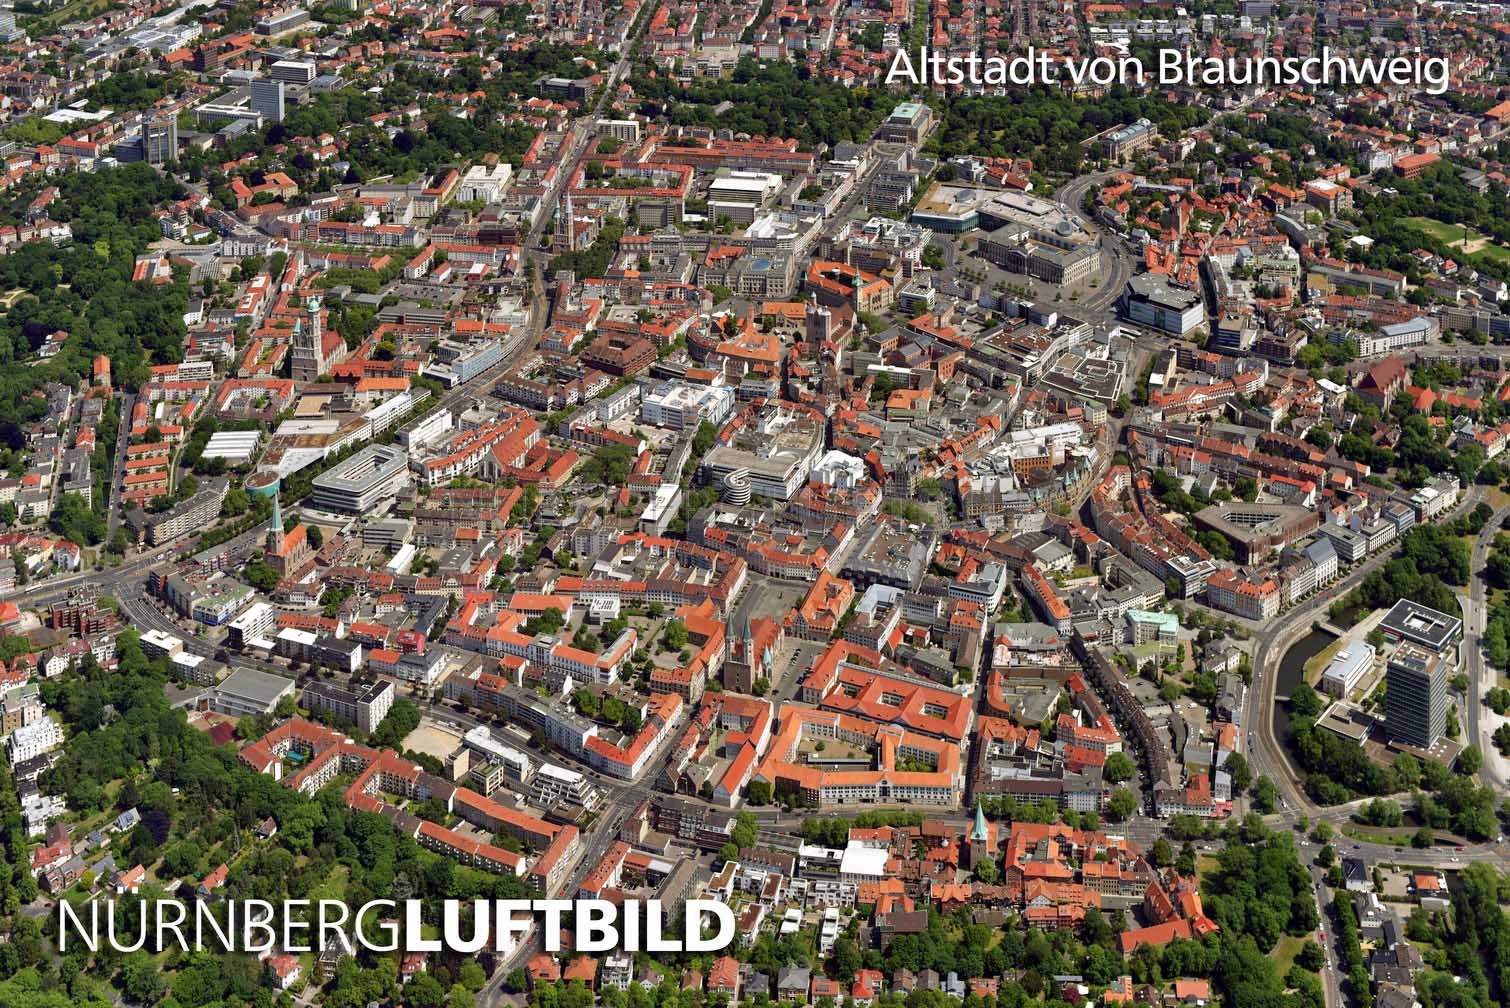 Altstadt von Braunschweig, Luftbild